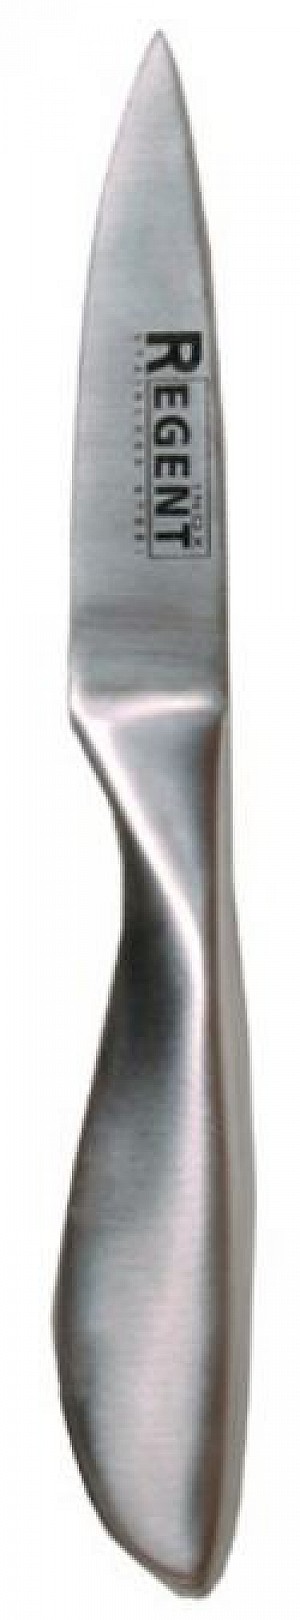 Нож овощной Regent (Luna) 93-HA-6,2  120/85мм метал.ручка   (10)   